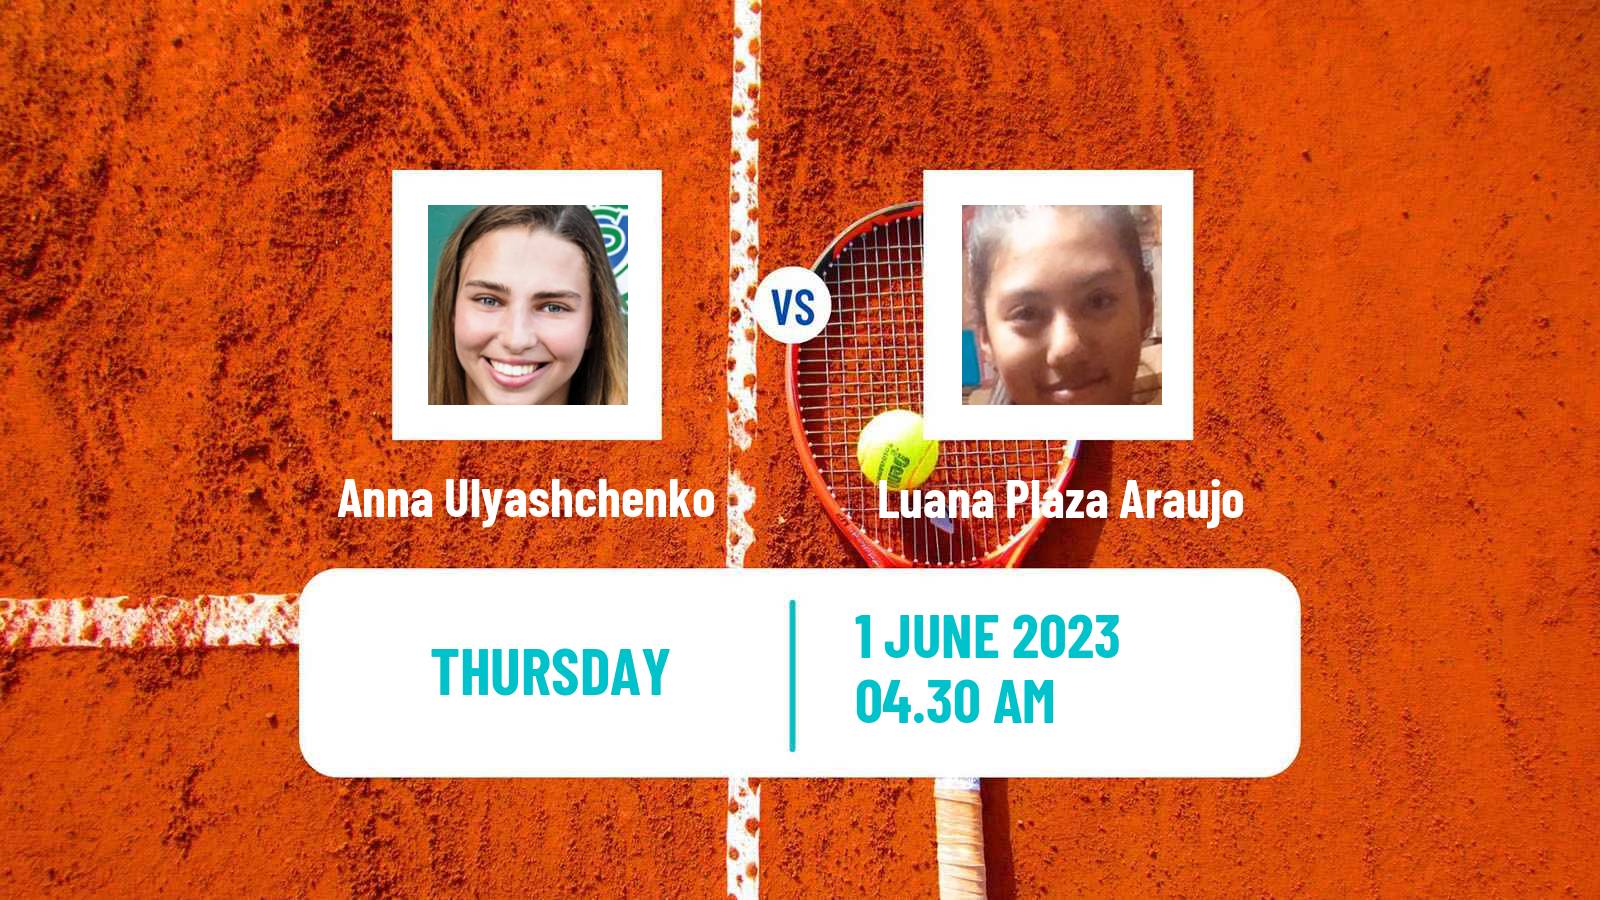 Tennis ITF W15 Monastir 17 Women Anna Ulyashchenko - Luana Plaza Araujo